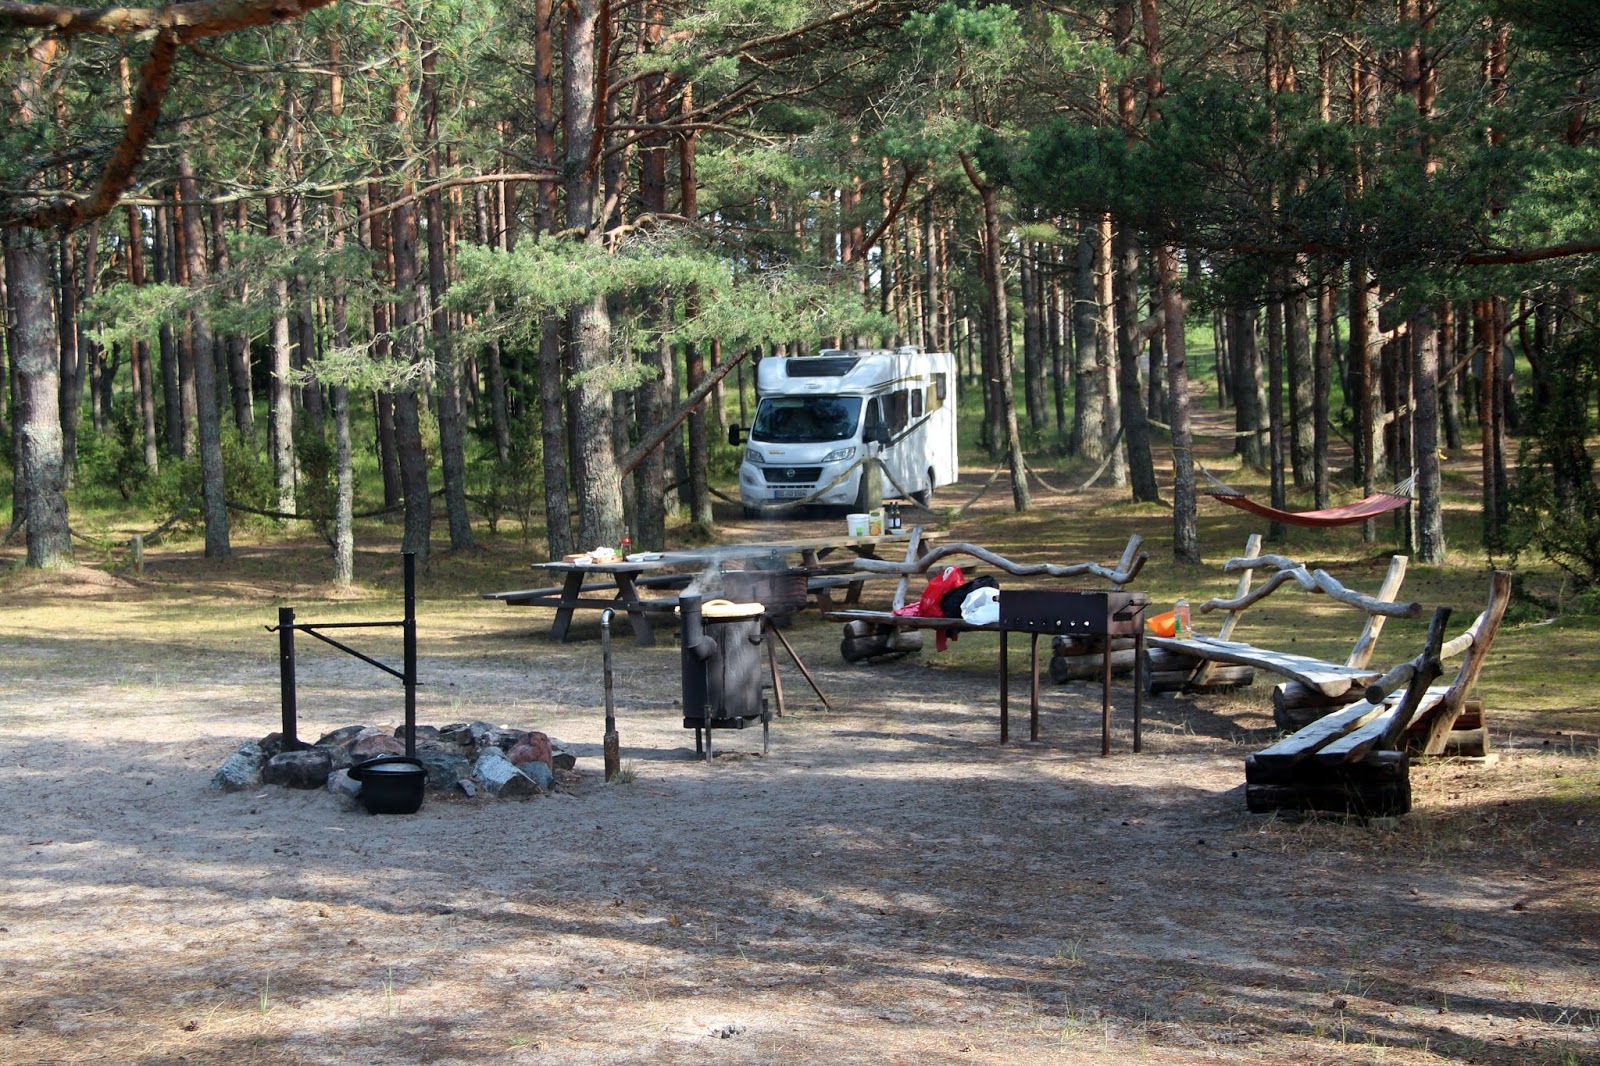 Miera osta camping的照片 具有非常干净级别的清洁度